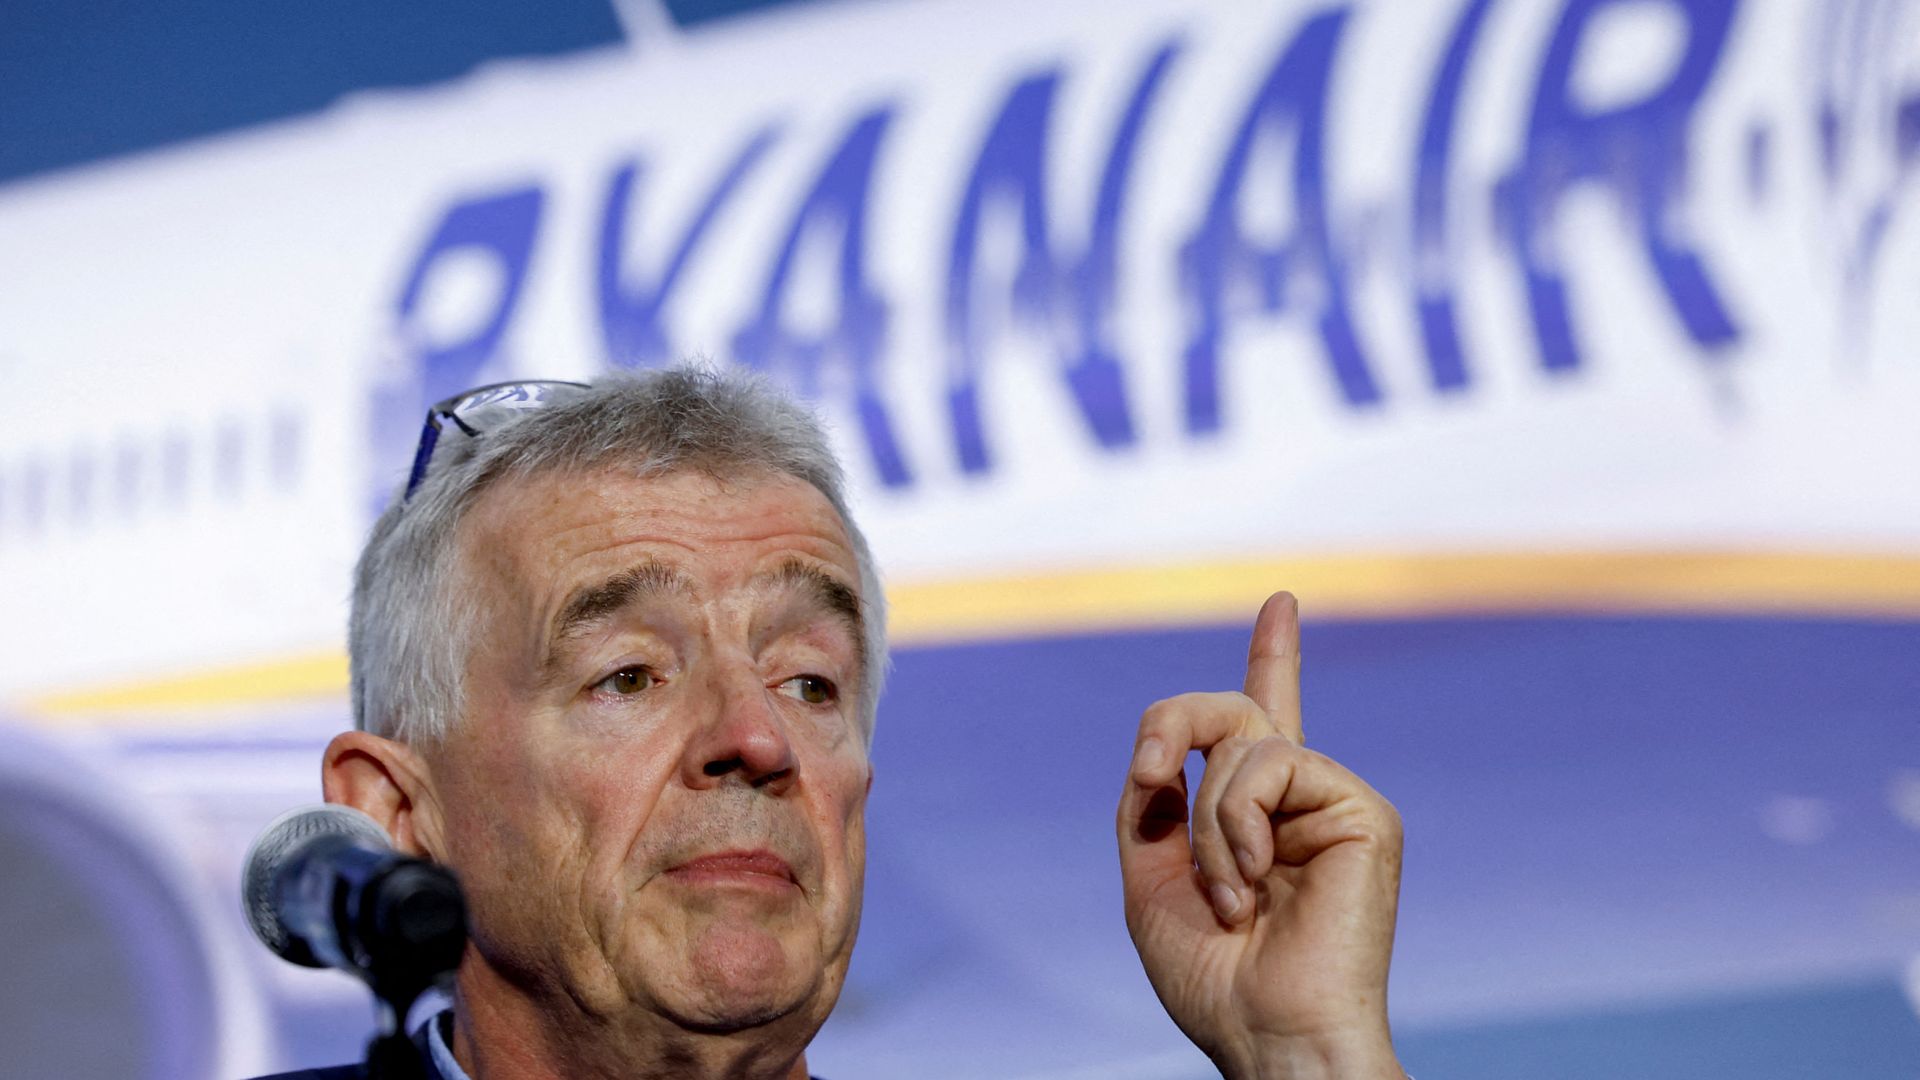 Ryanair sues over 'terrible' summer flight delays